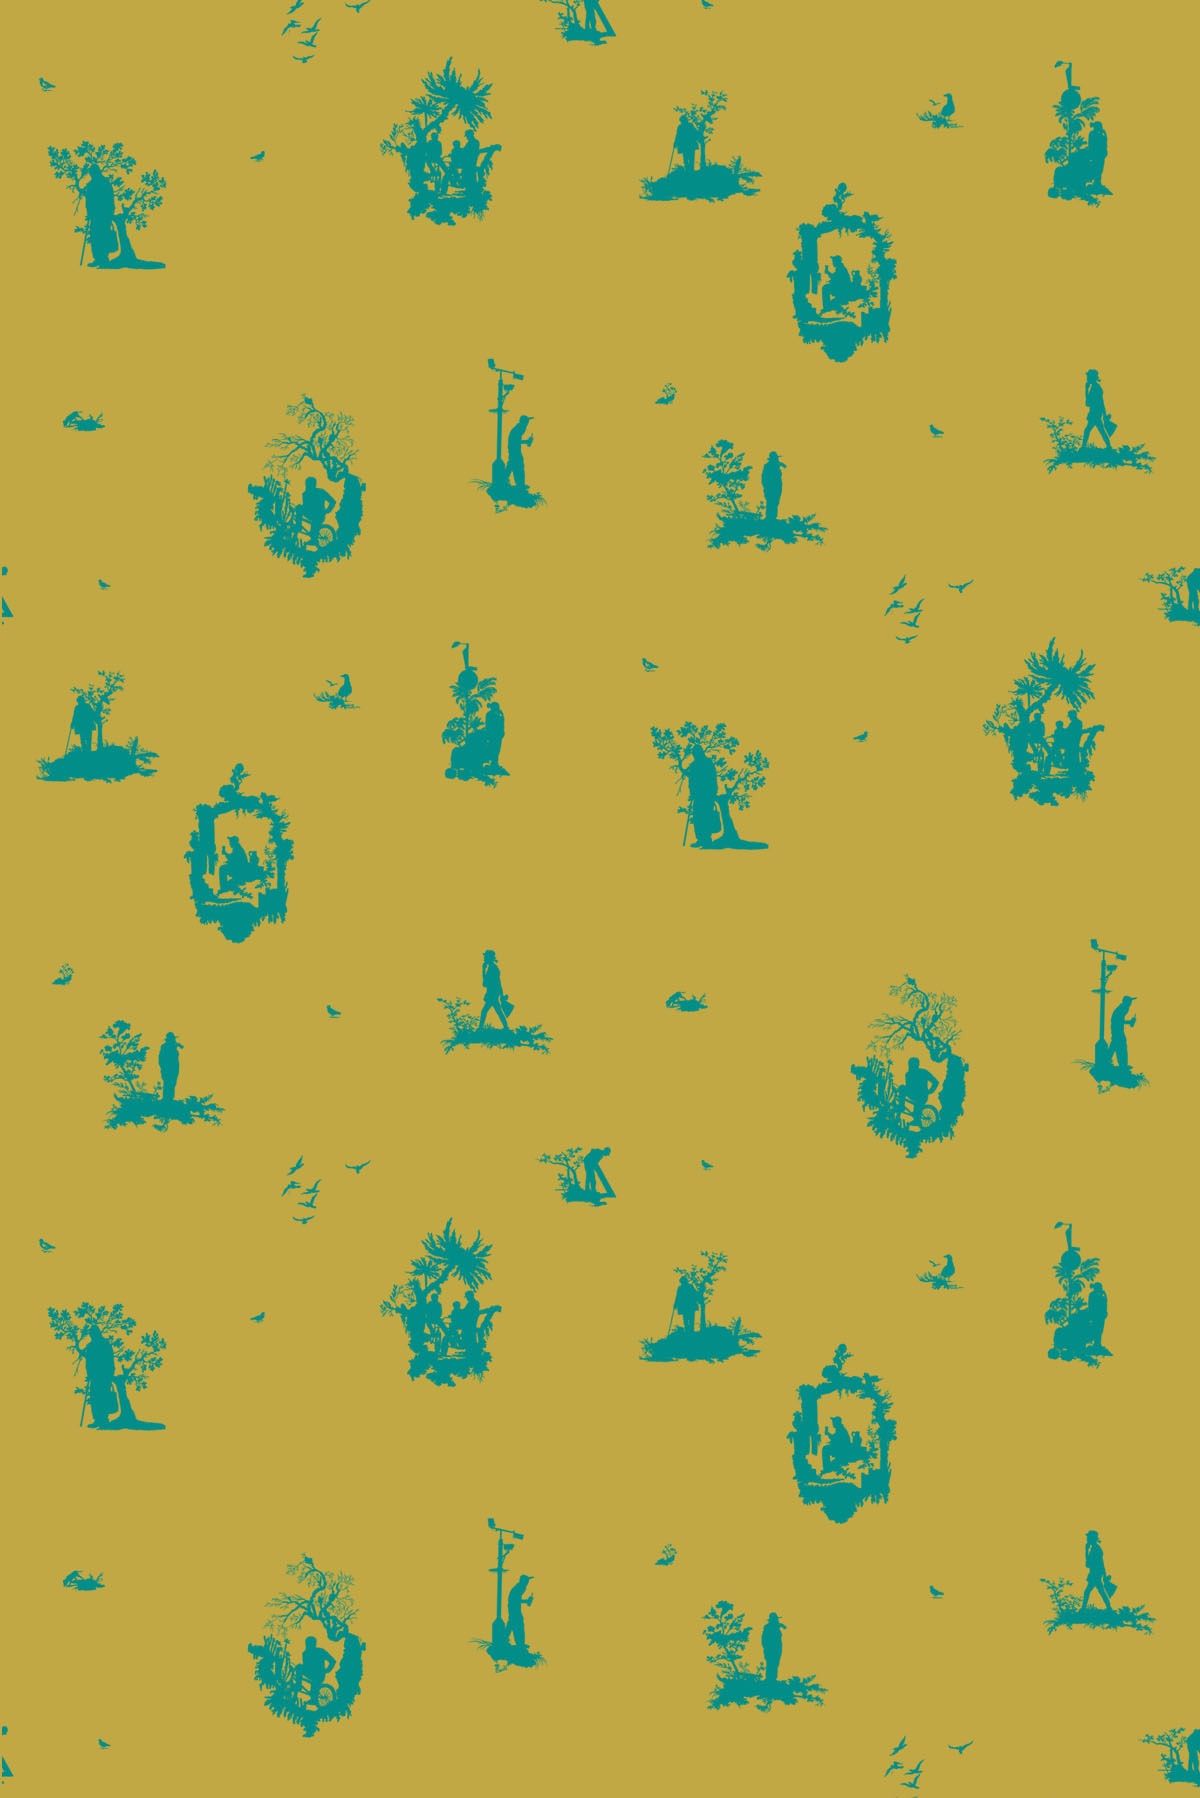 손 인쇄 벽지,아쿠아,푸른,터키 옥,노랑,초록